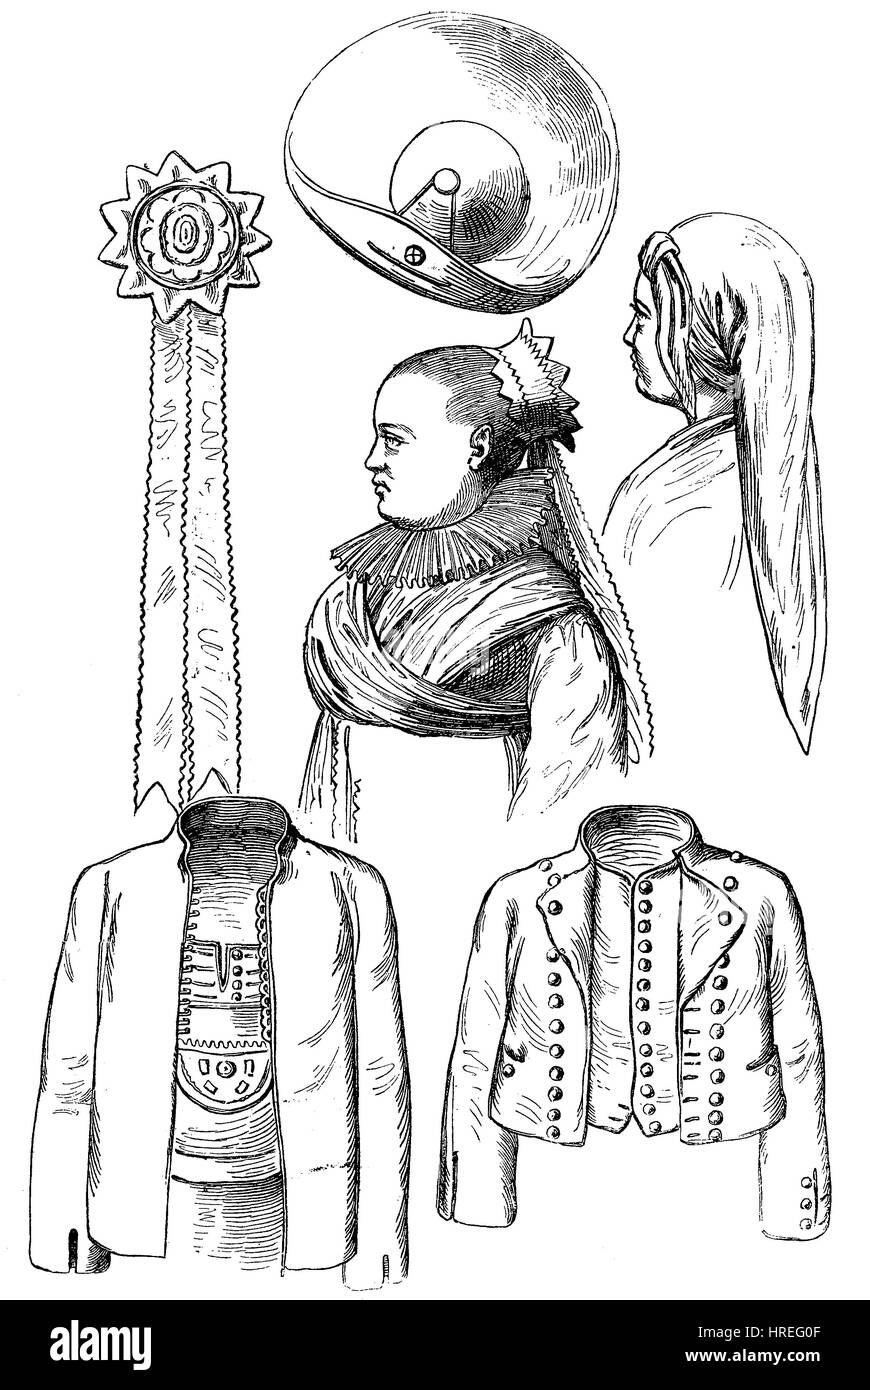 Divers vêtements du costume de fête des bourdons, Hummeln, de Mistelgau, Frankonia, Bavière, Allemagne, la reproduction d'une gravure sur bois du xixe siècle, 1885 Banque D'Images